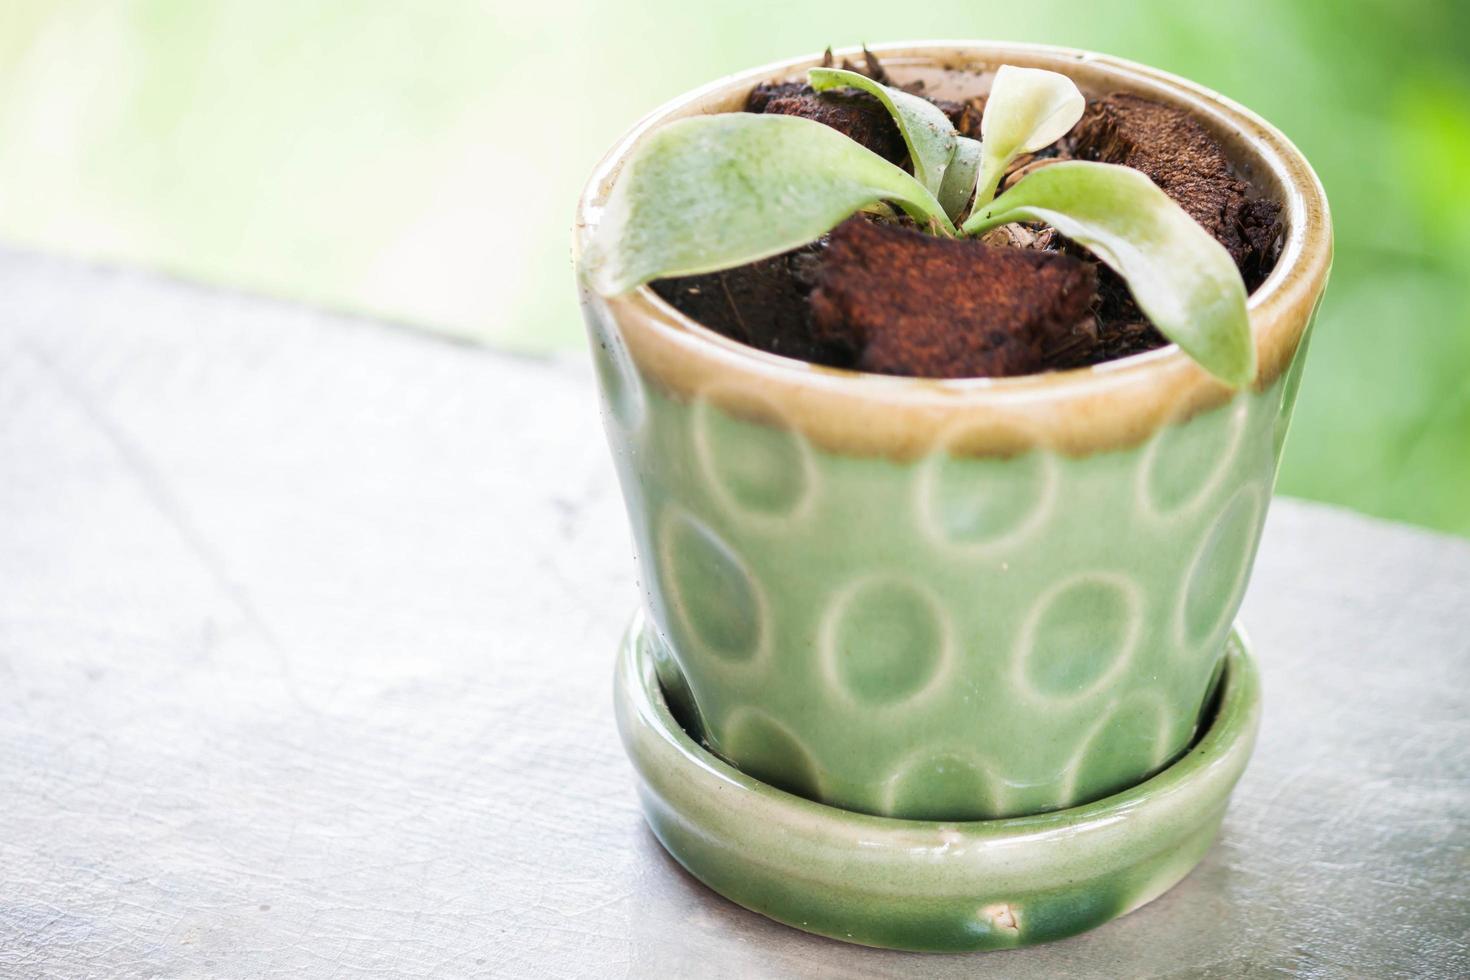 grüne Pflanze in einem Keramikblumentopf foto